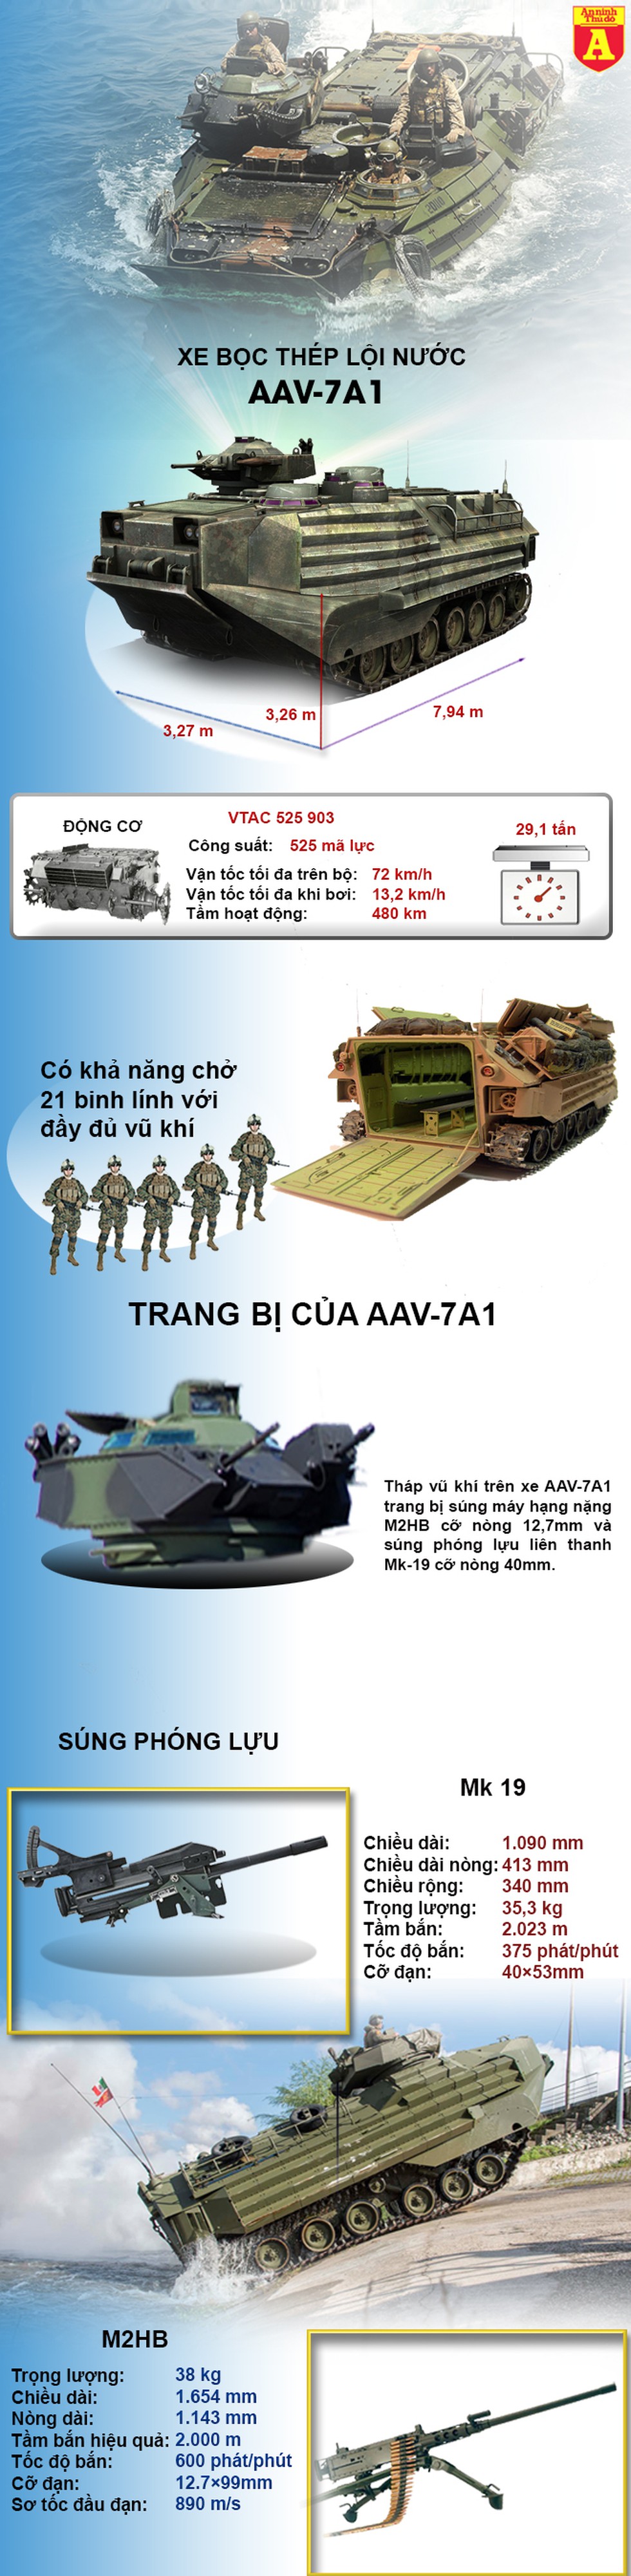 [Infographic] Sức mạnh từ 36 thiết giáp đổ bộ cực mạnh AAV-7A1 của Thái Lan - Ảnh 1